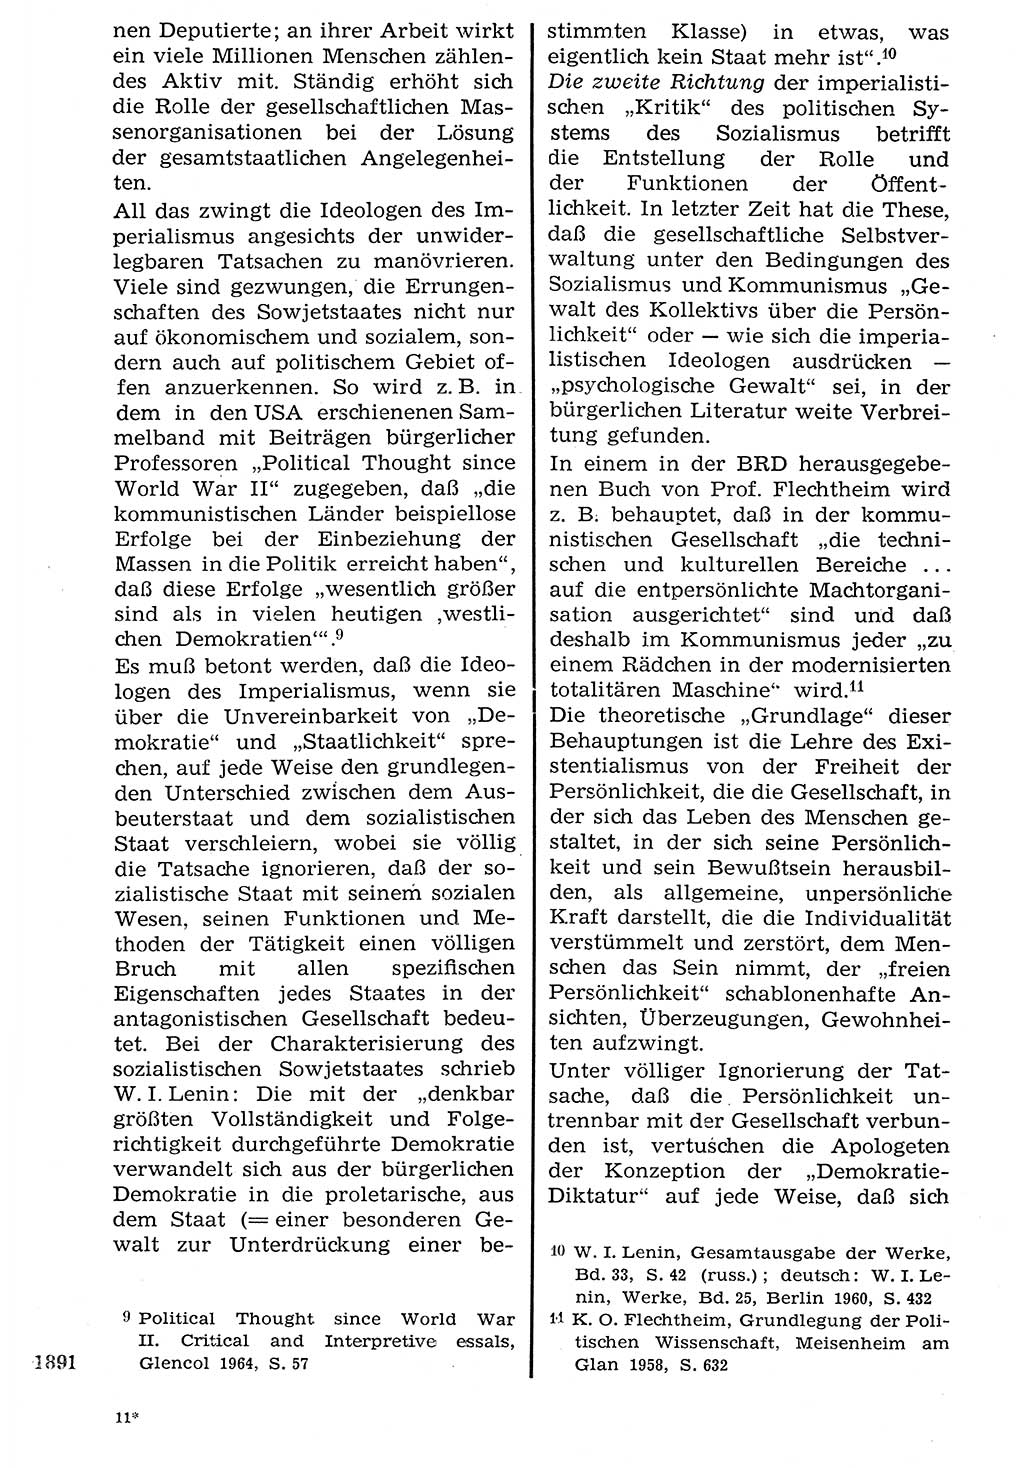 Staat und Recht (StuR), 17. Jahrgang [Deutsche Demokratische Republik (DDR)] 1968, Seite 1891 (StuR DDR 1968, S. 1891)